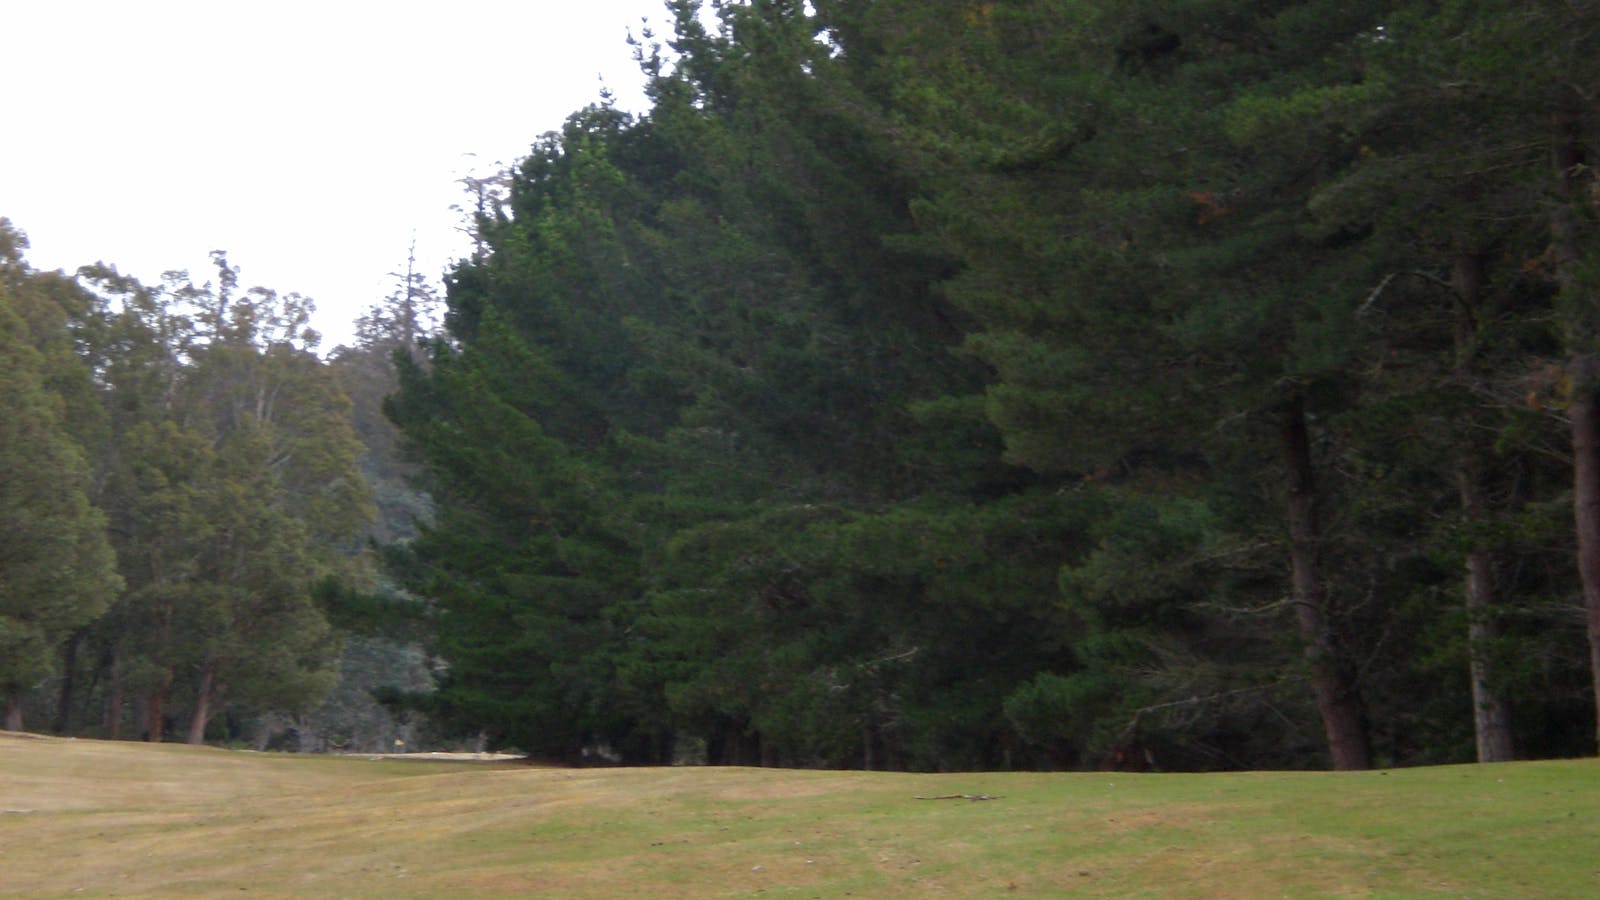 Tarraleah 9 hole golf course is Tasmania's highest golf course.